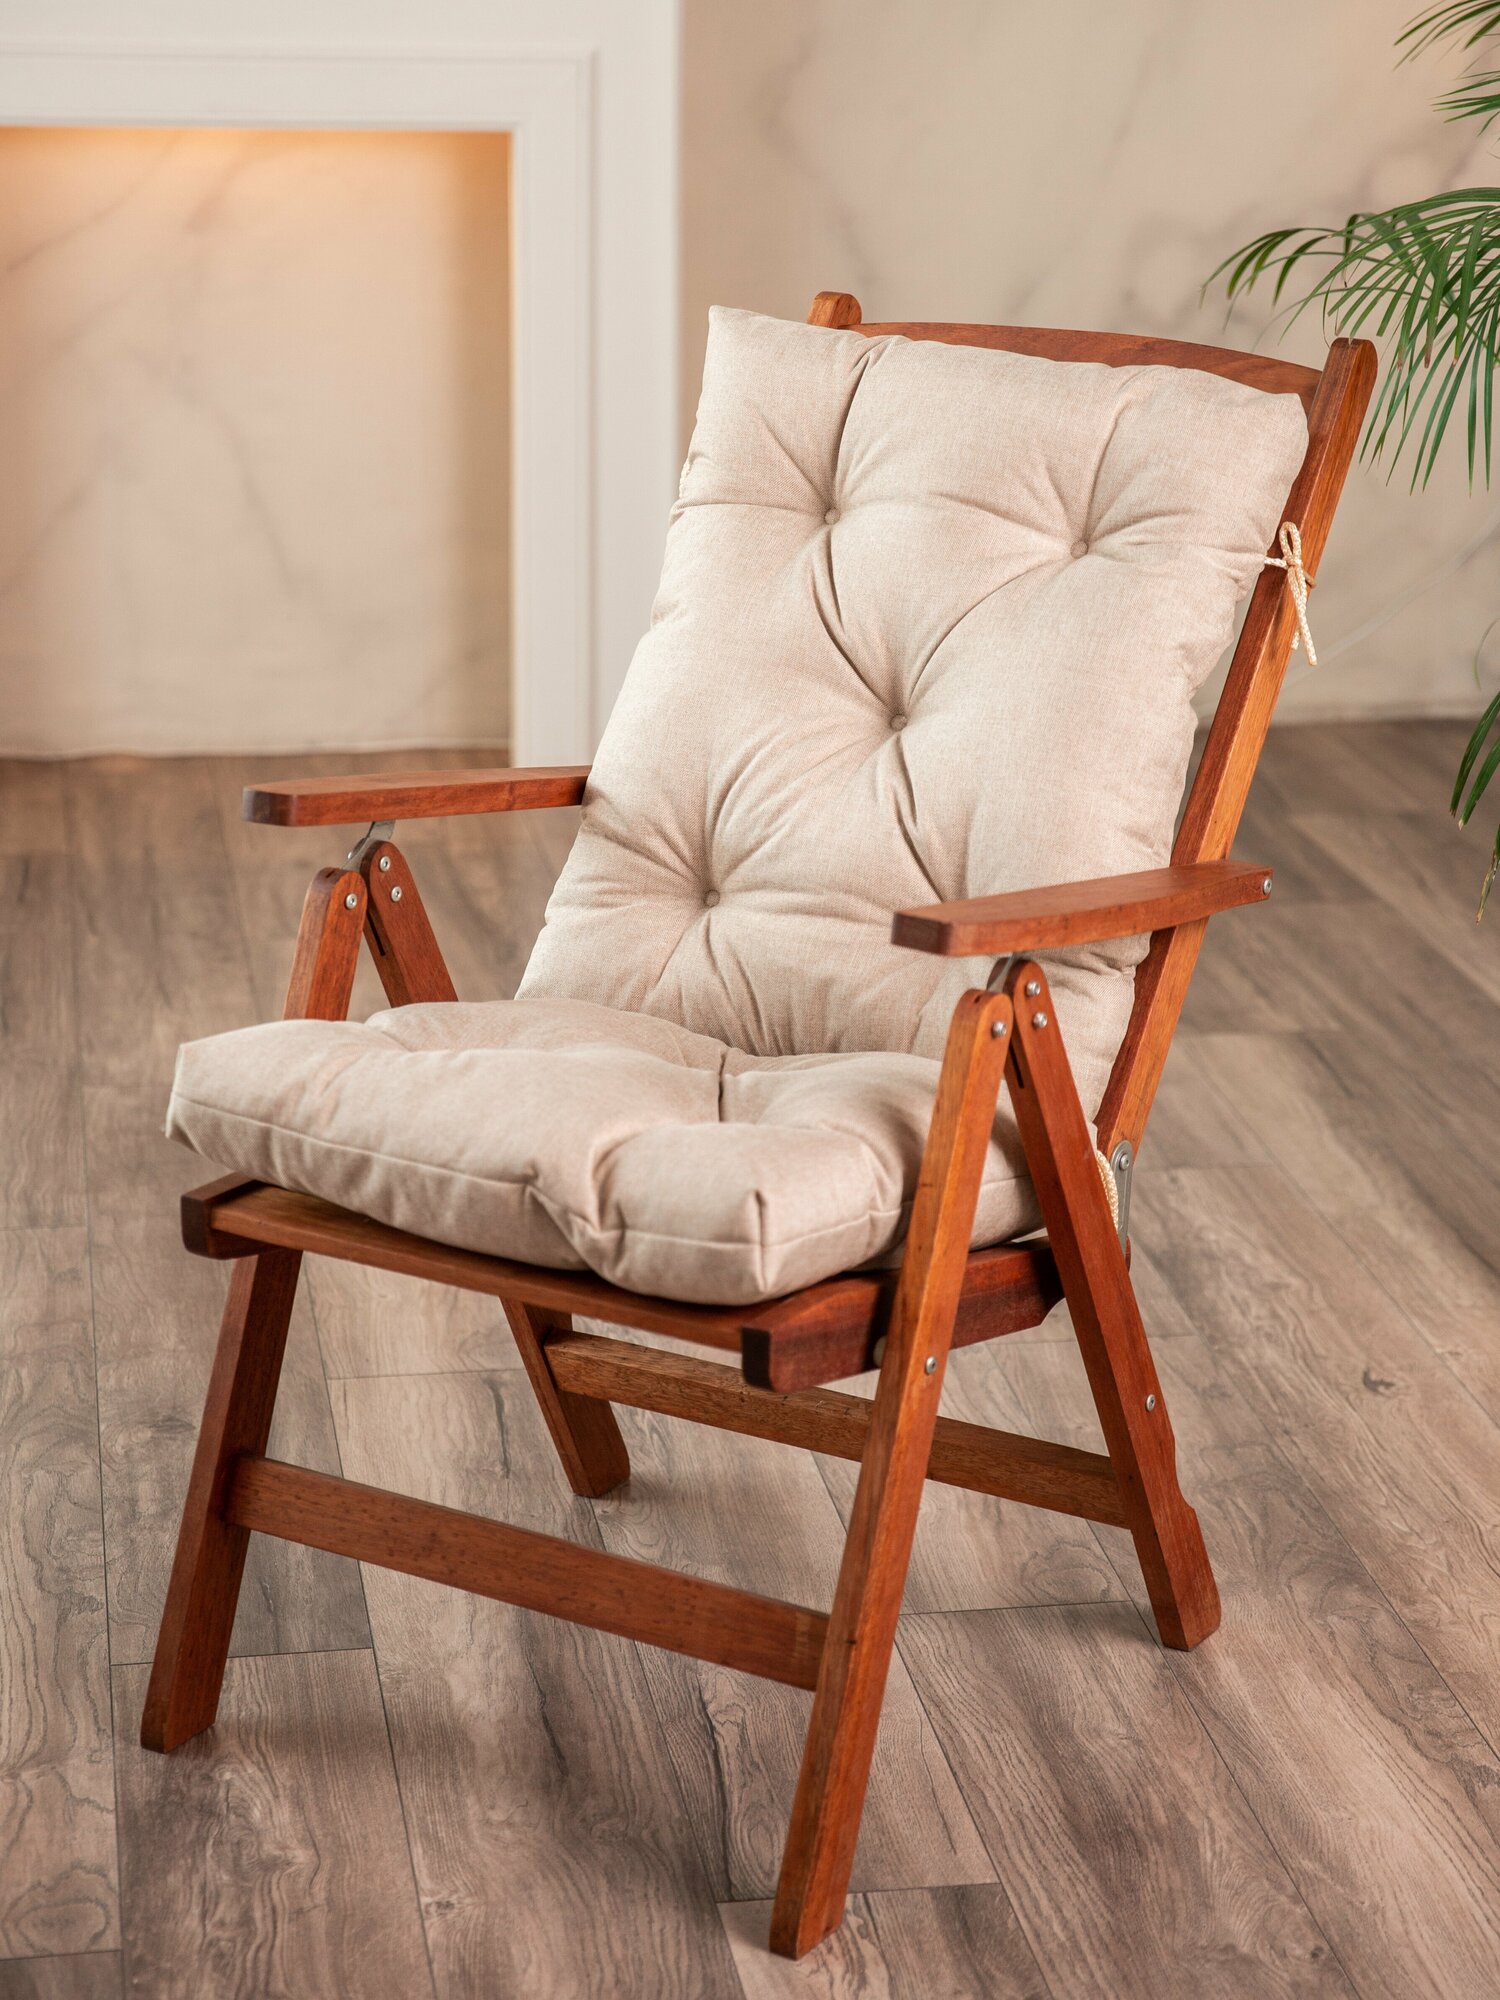 Матрас-подушка на качели, скамейку или подвесное кресло, песок